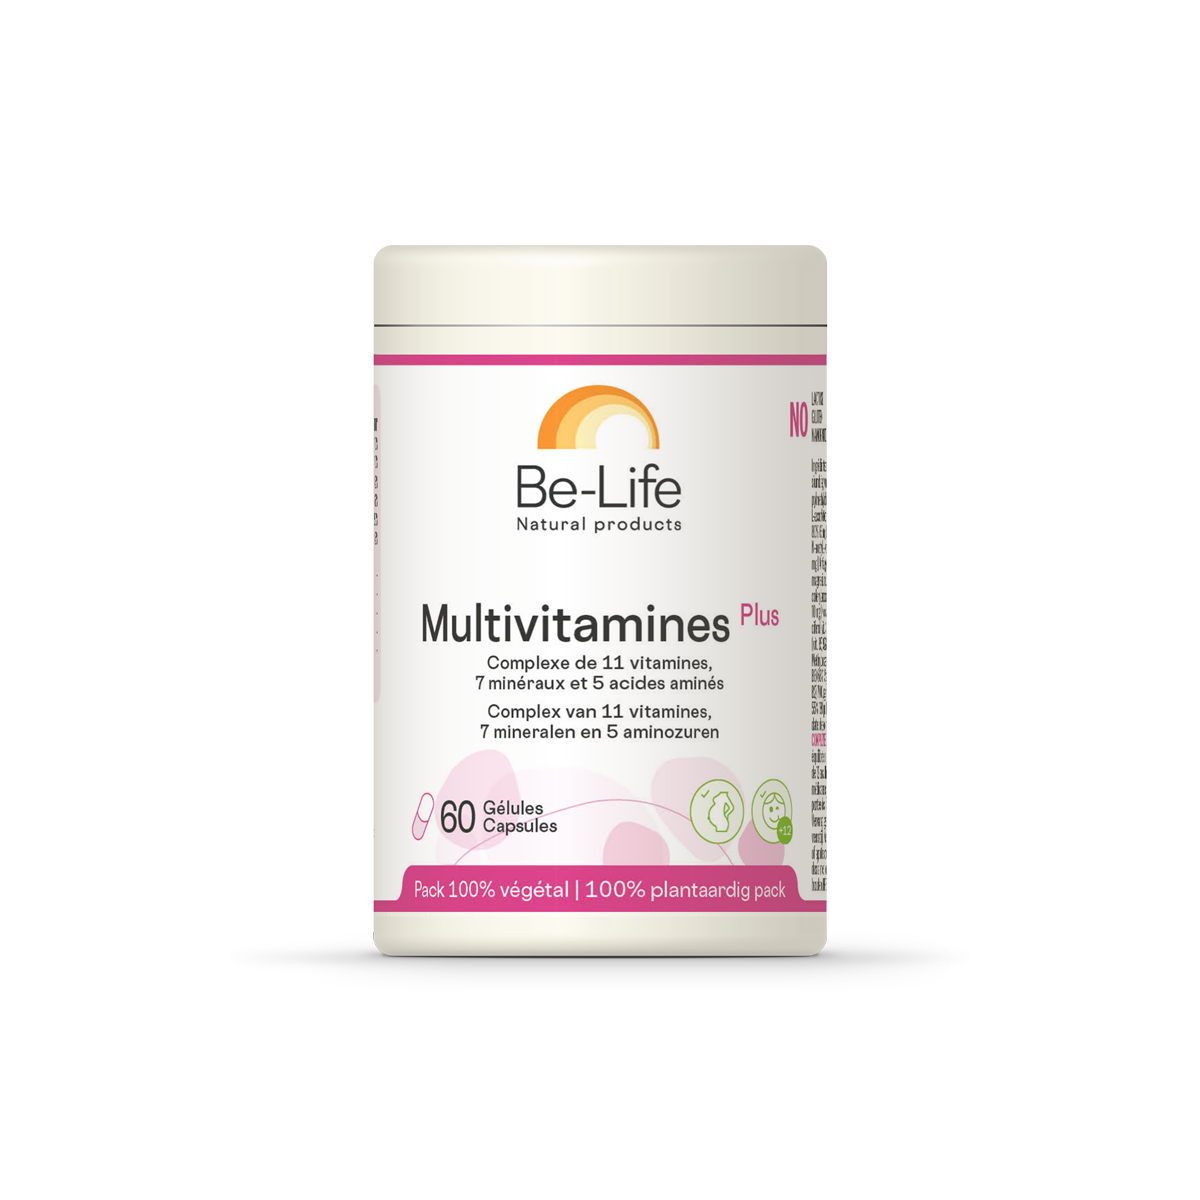 Multivitamines Plus